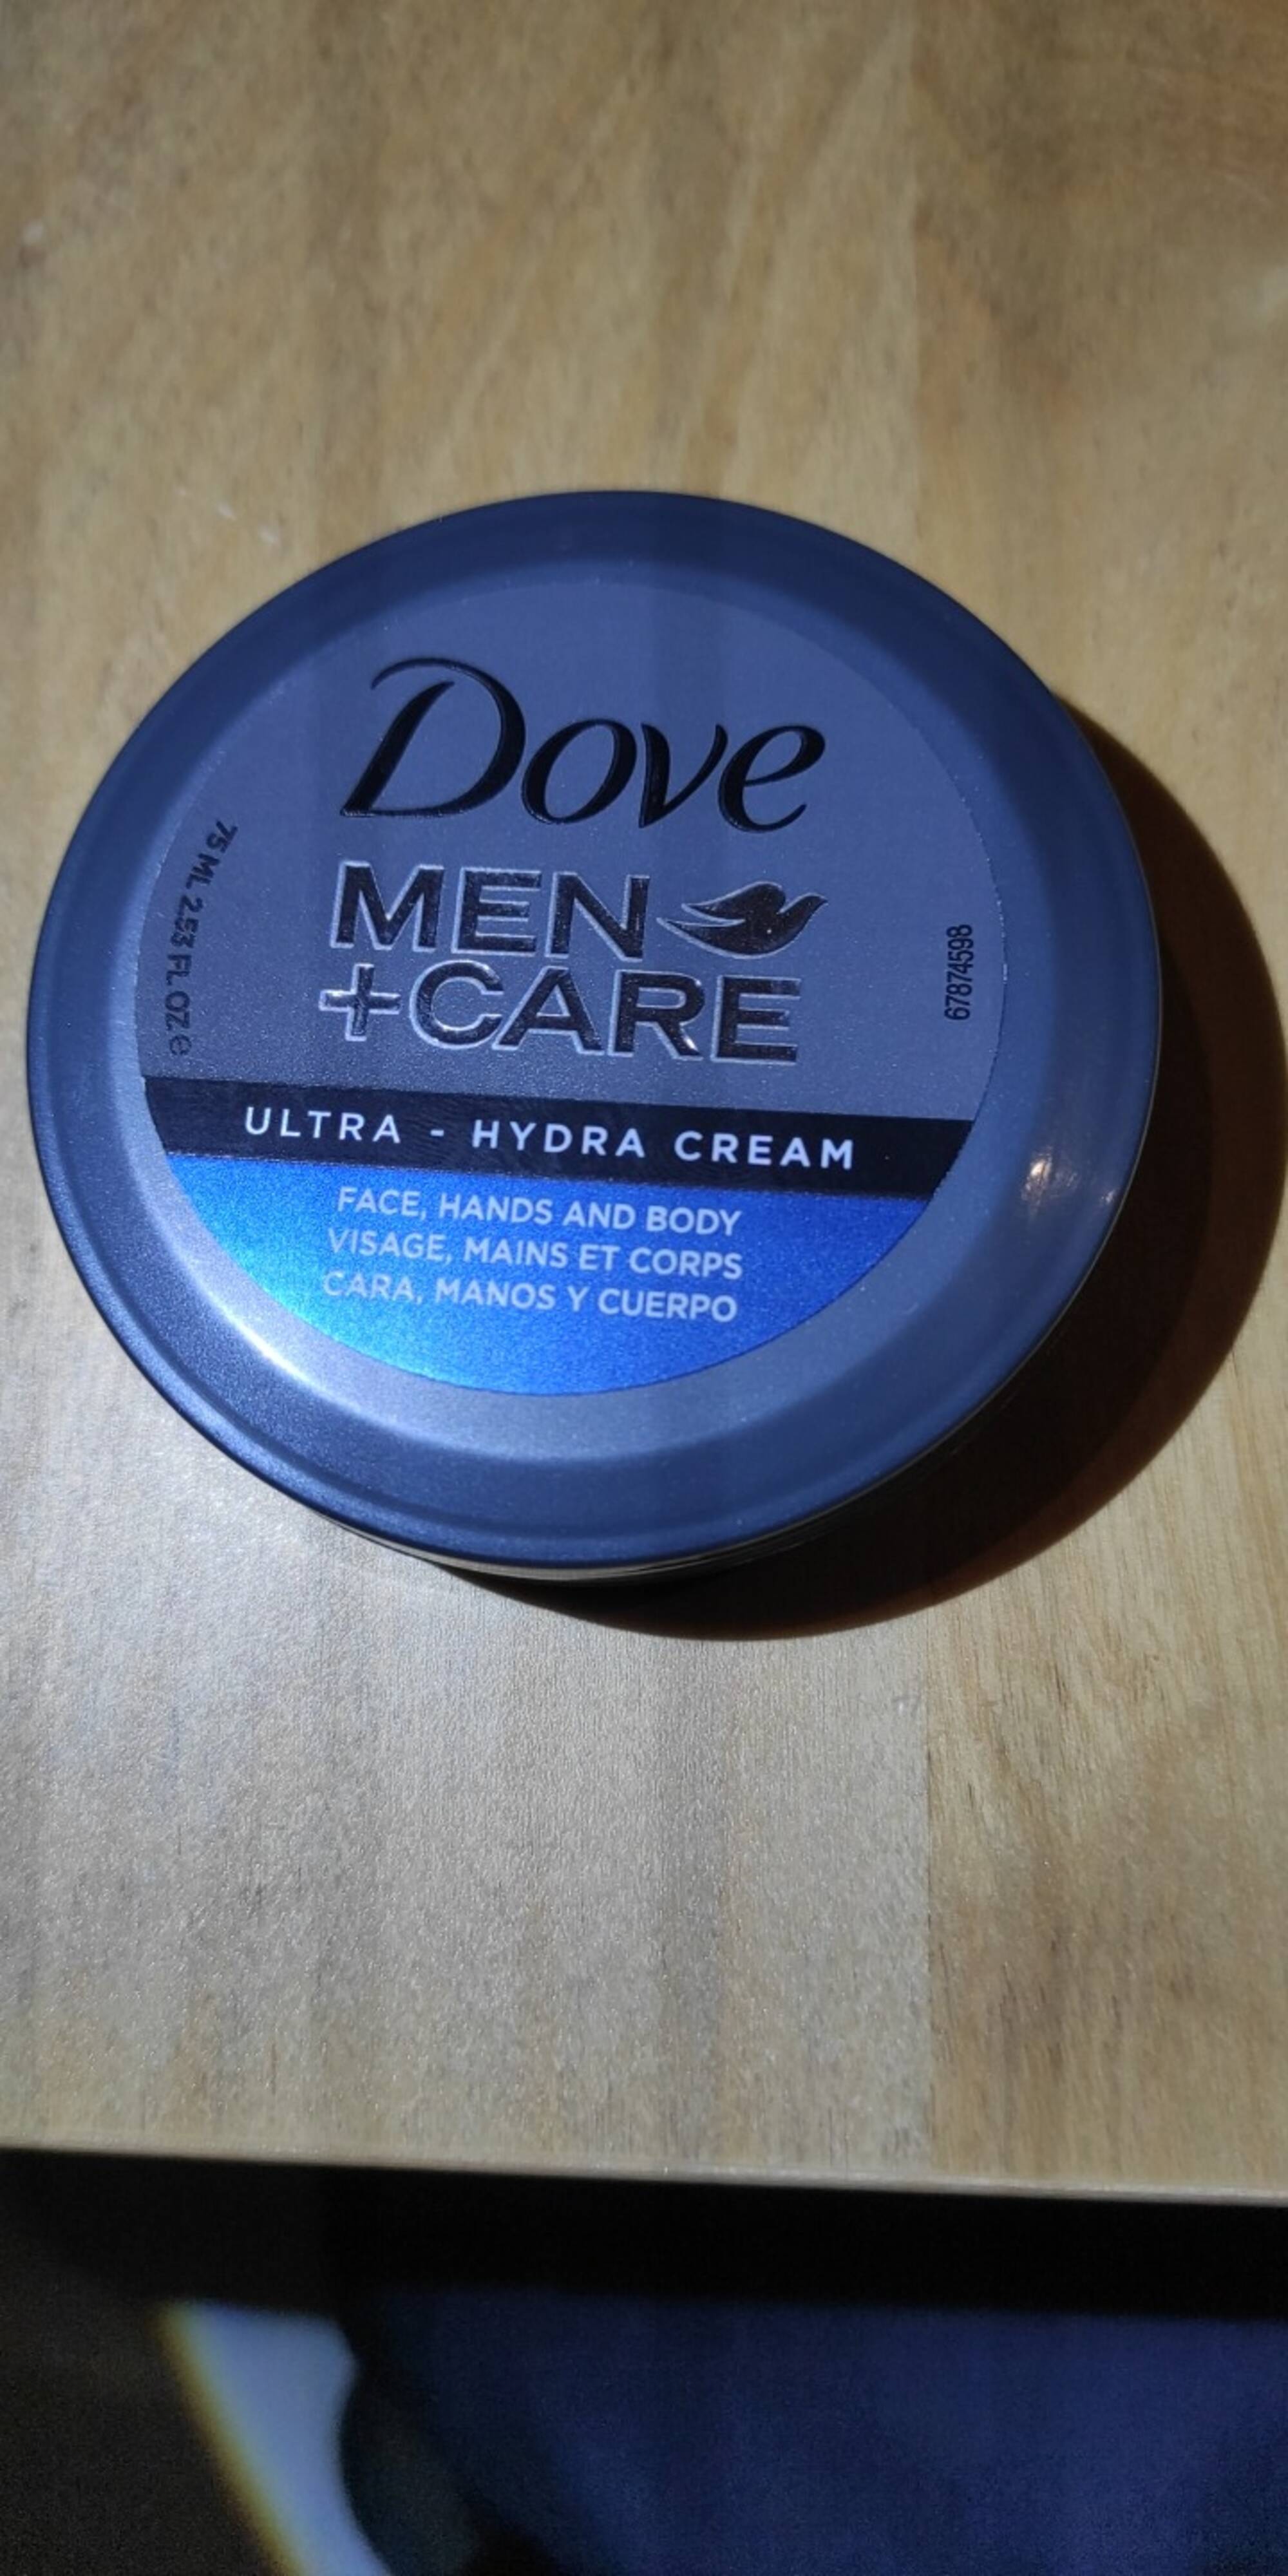 DOVE - Men + care - Hydra crème visage, mains et corps